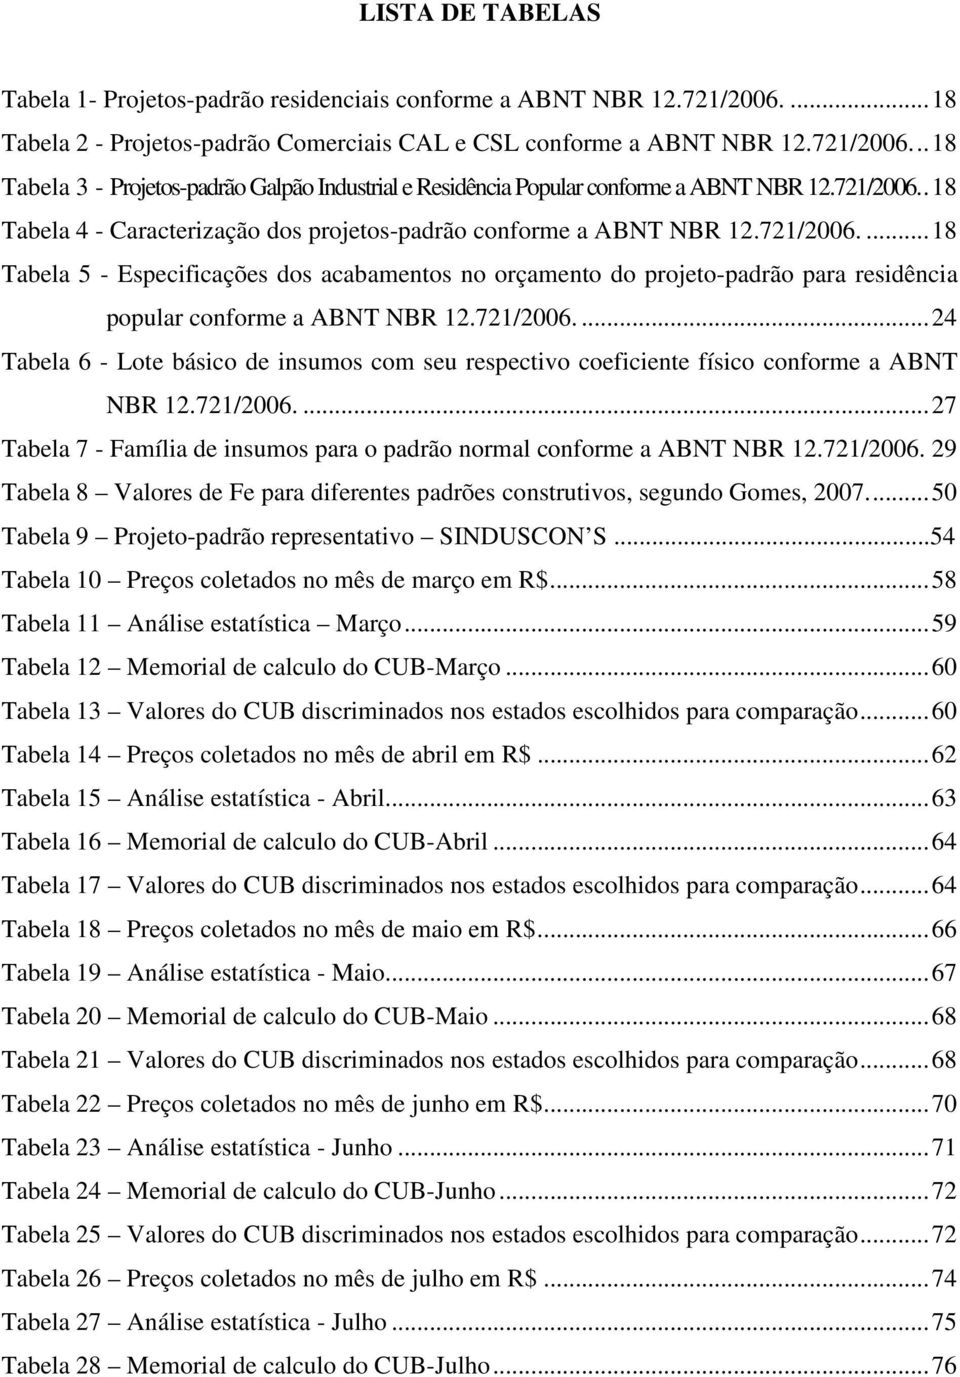 721/2006.... 24 Tabela 6 - Lote básico de insumos com seu respectivo coeficiente físico conforme a ABNT NBR 12.721/2006.... 27 Tabela 7 - Família de insumos para o padrão normal conforme a ABNT NBR 12.